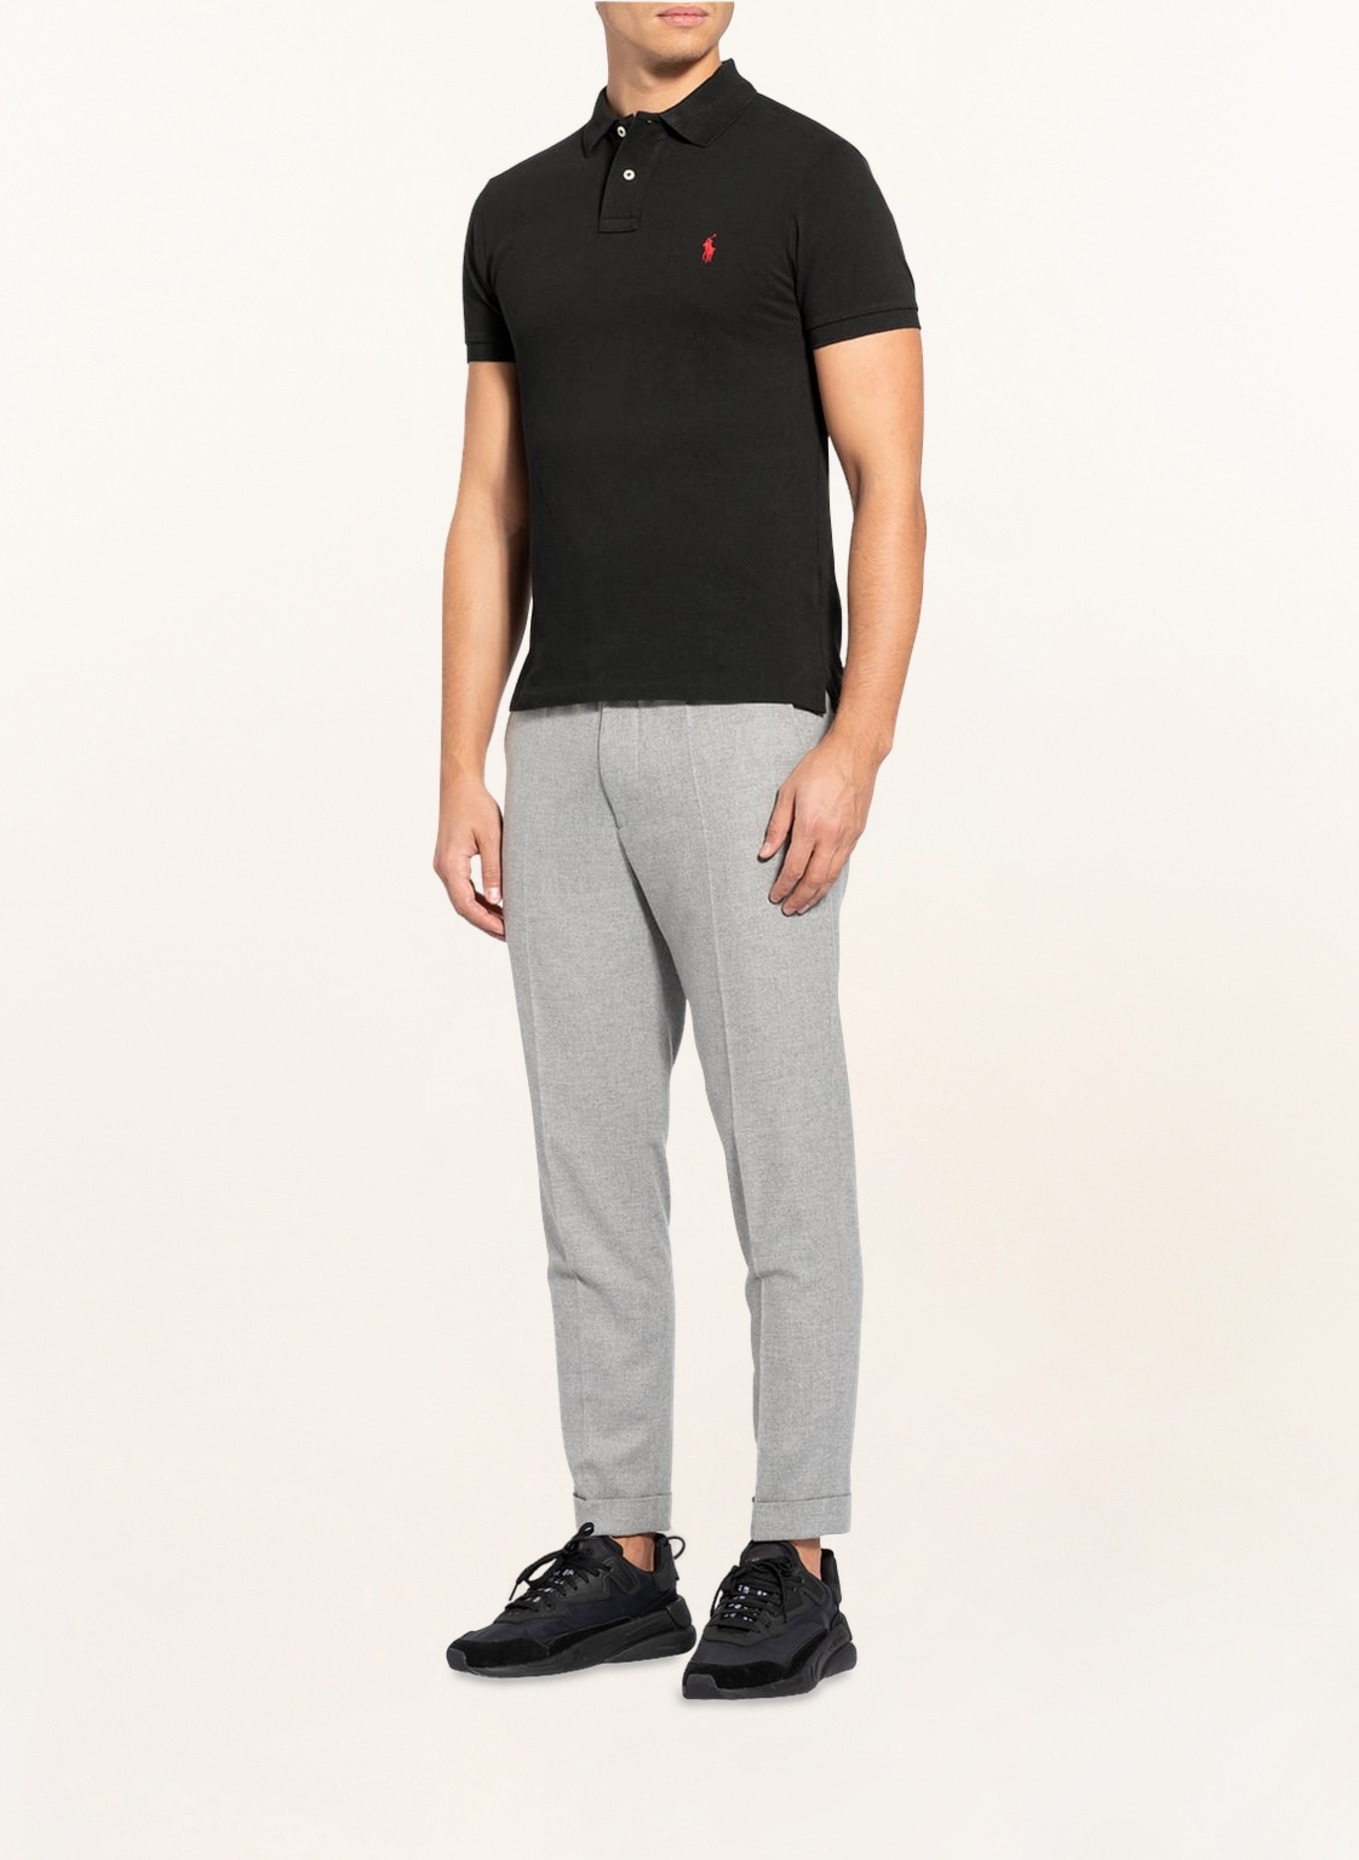 POLO RALPH LAUREN Piqué polo shirt slim fit, Color: BLACK (Image 2)